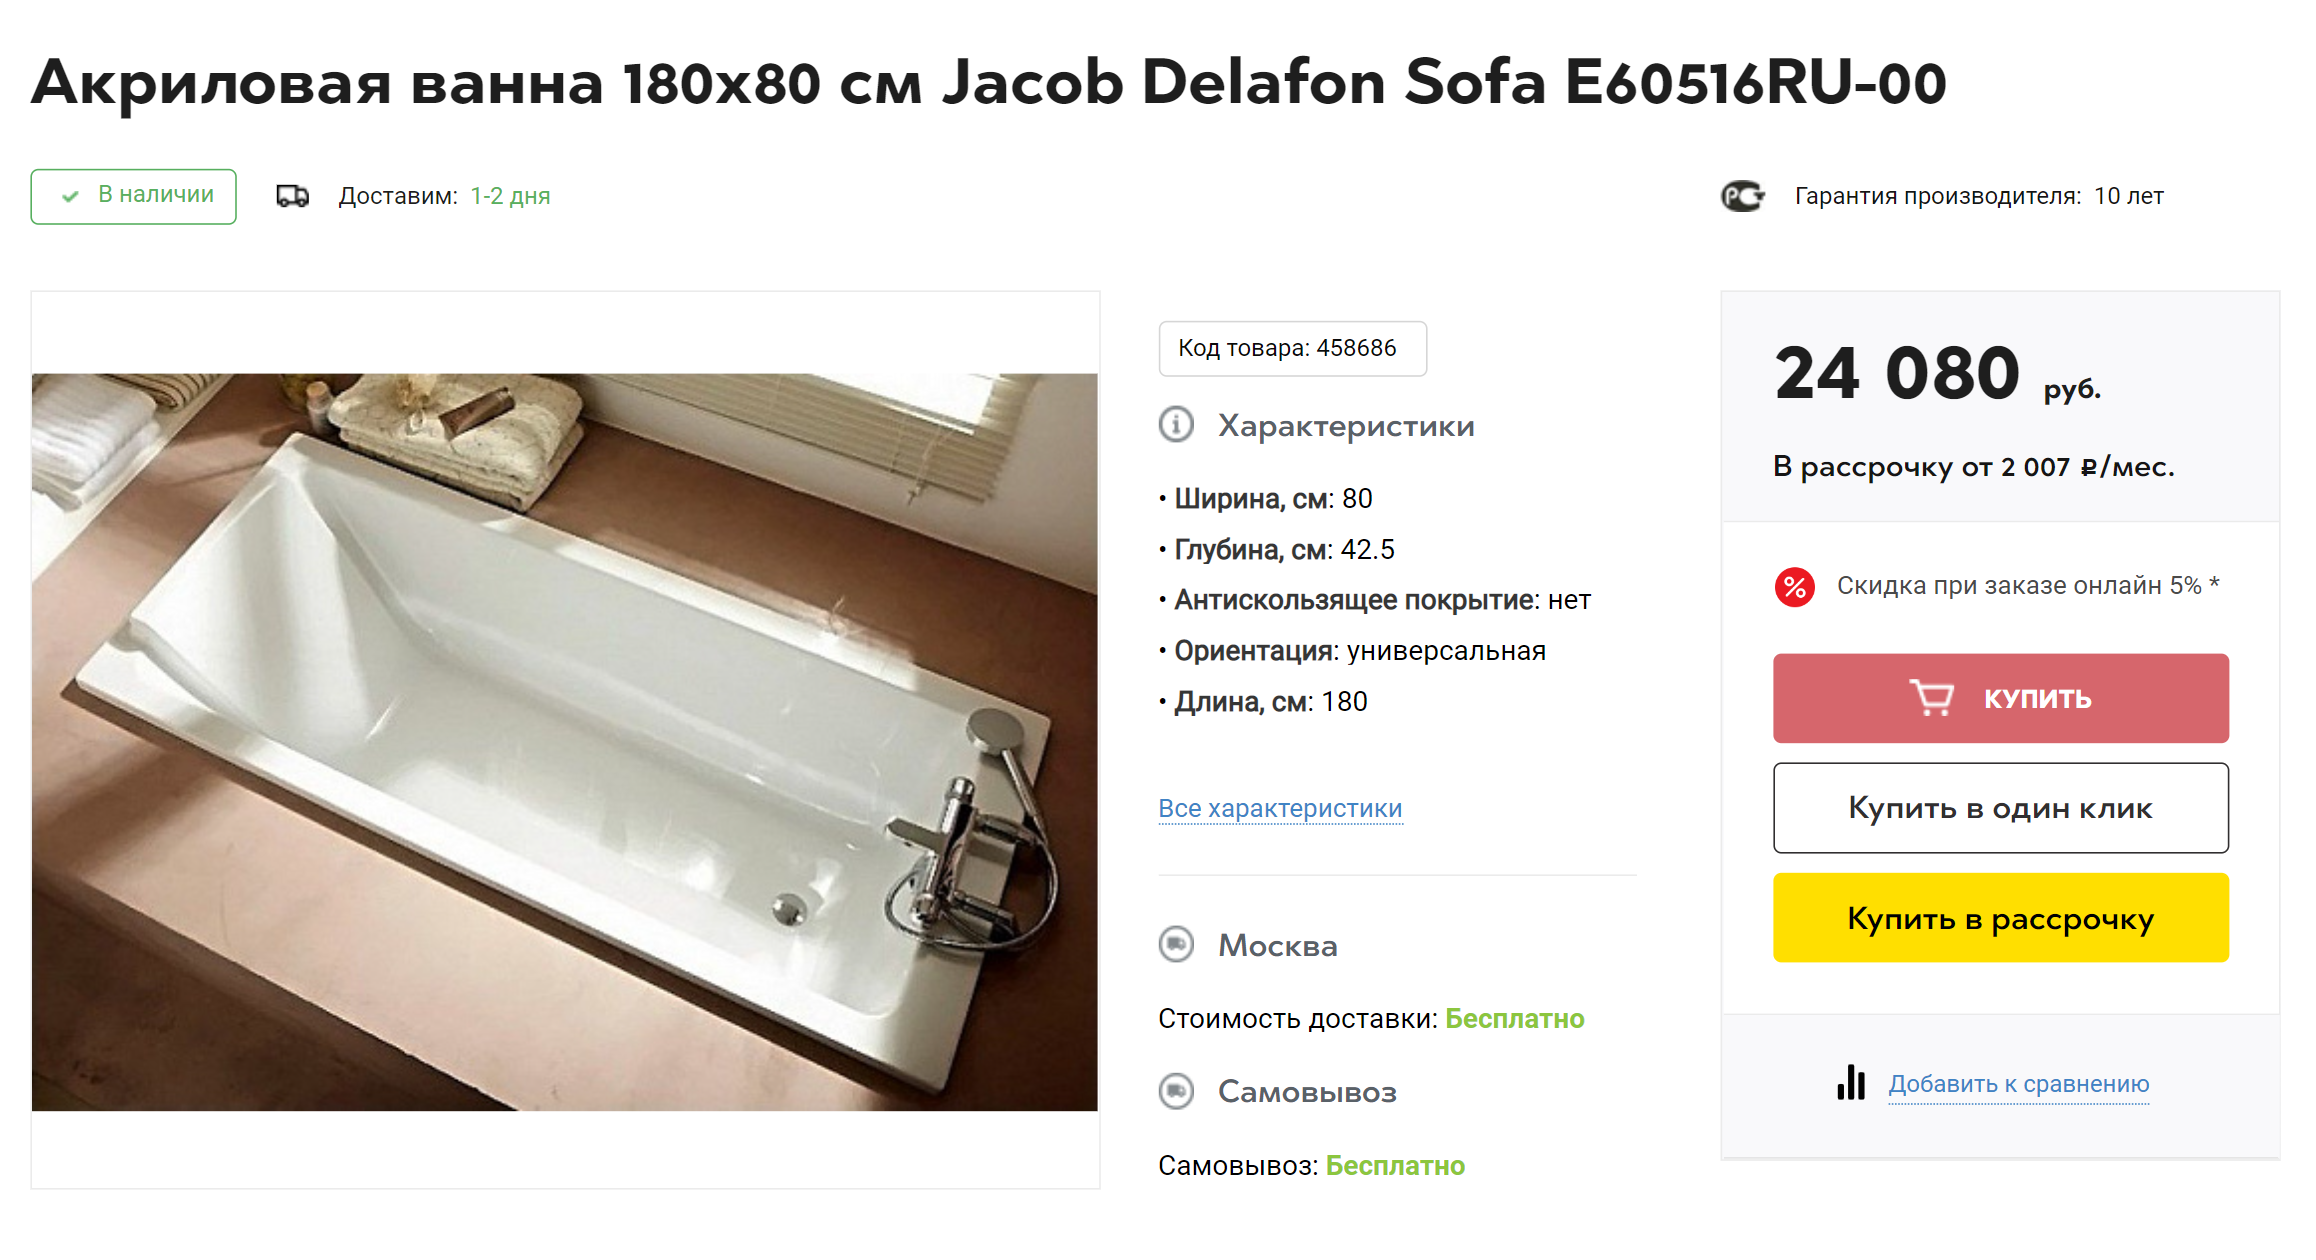 Мы выбрали акриловую ванну с широкими плоскими бортиками и удобной спинкой. Источник: shop⁠-⁠jd.ru